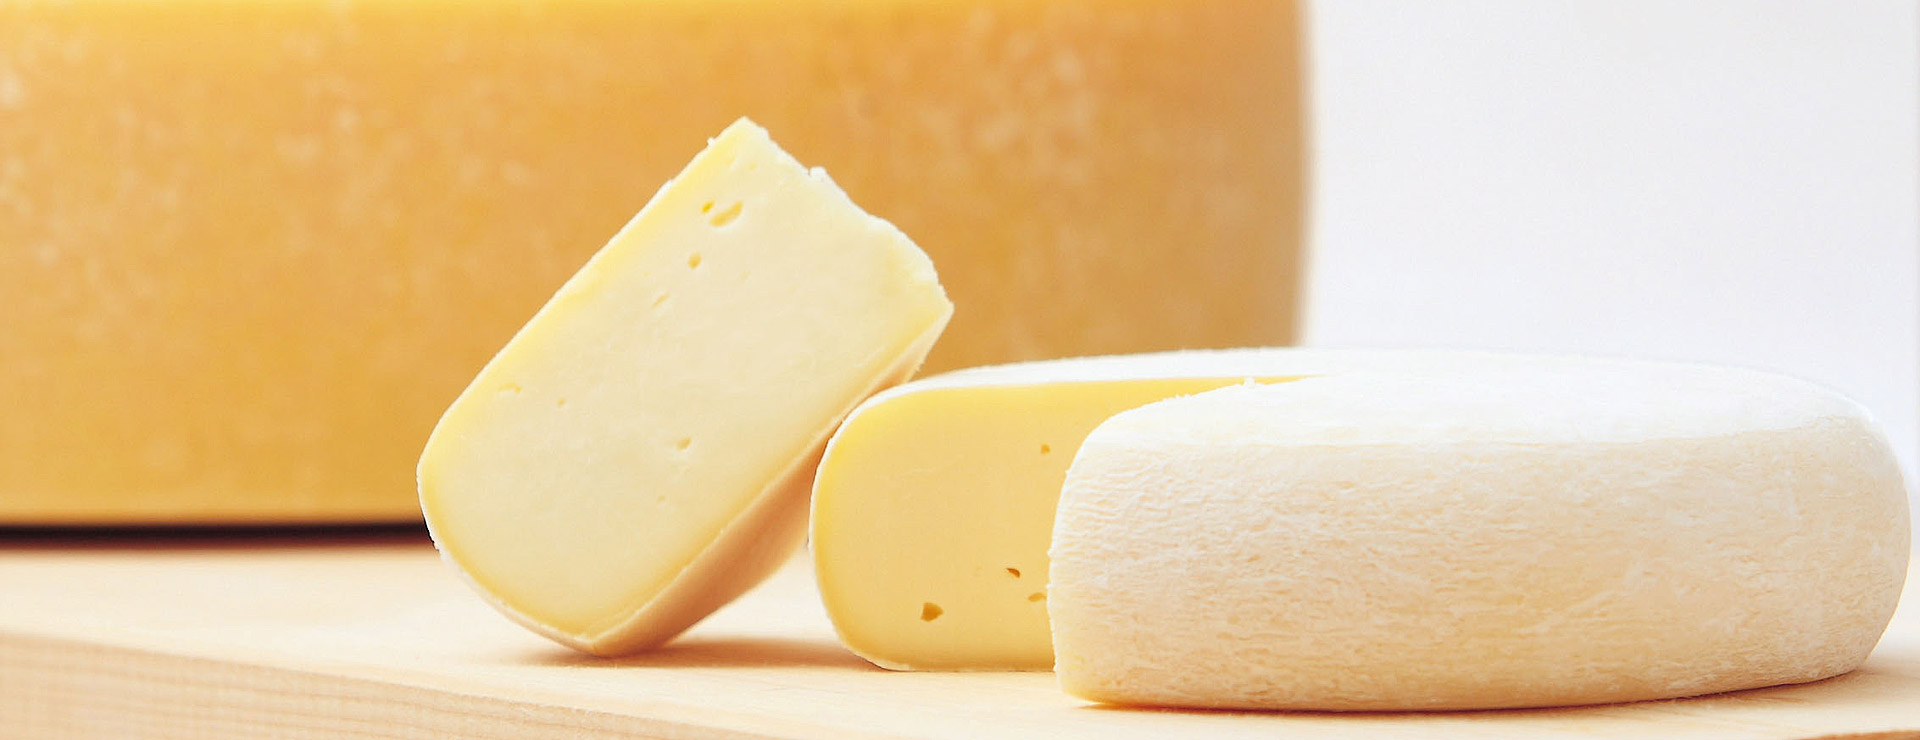 チーズ工房needs 北海道のナチュラルチーズ工房です 食べていただきたい いつものテーブルにチーズを